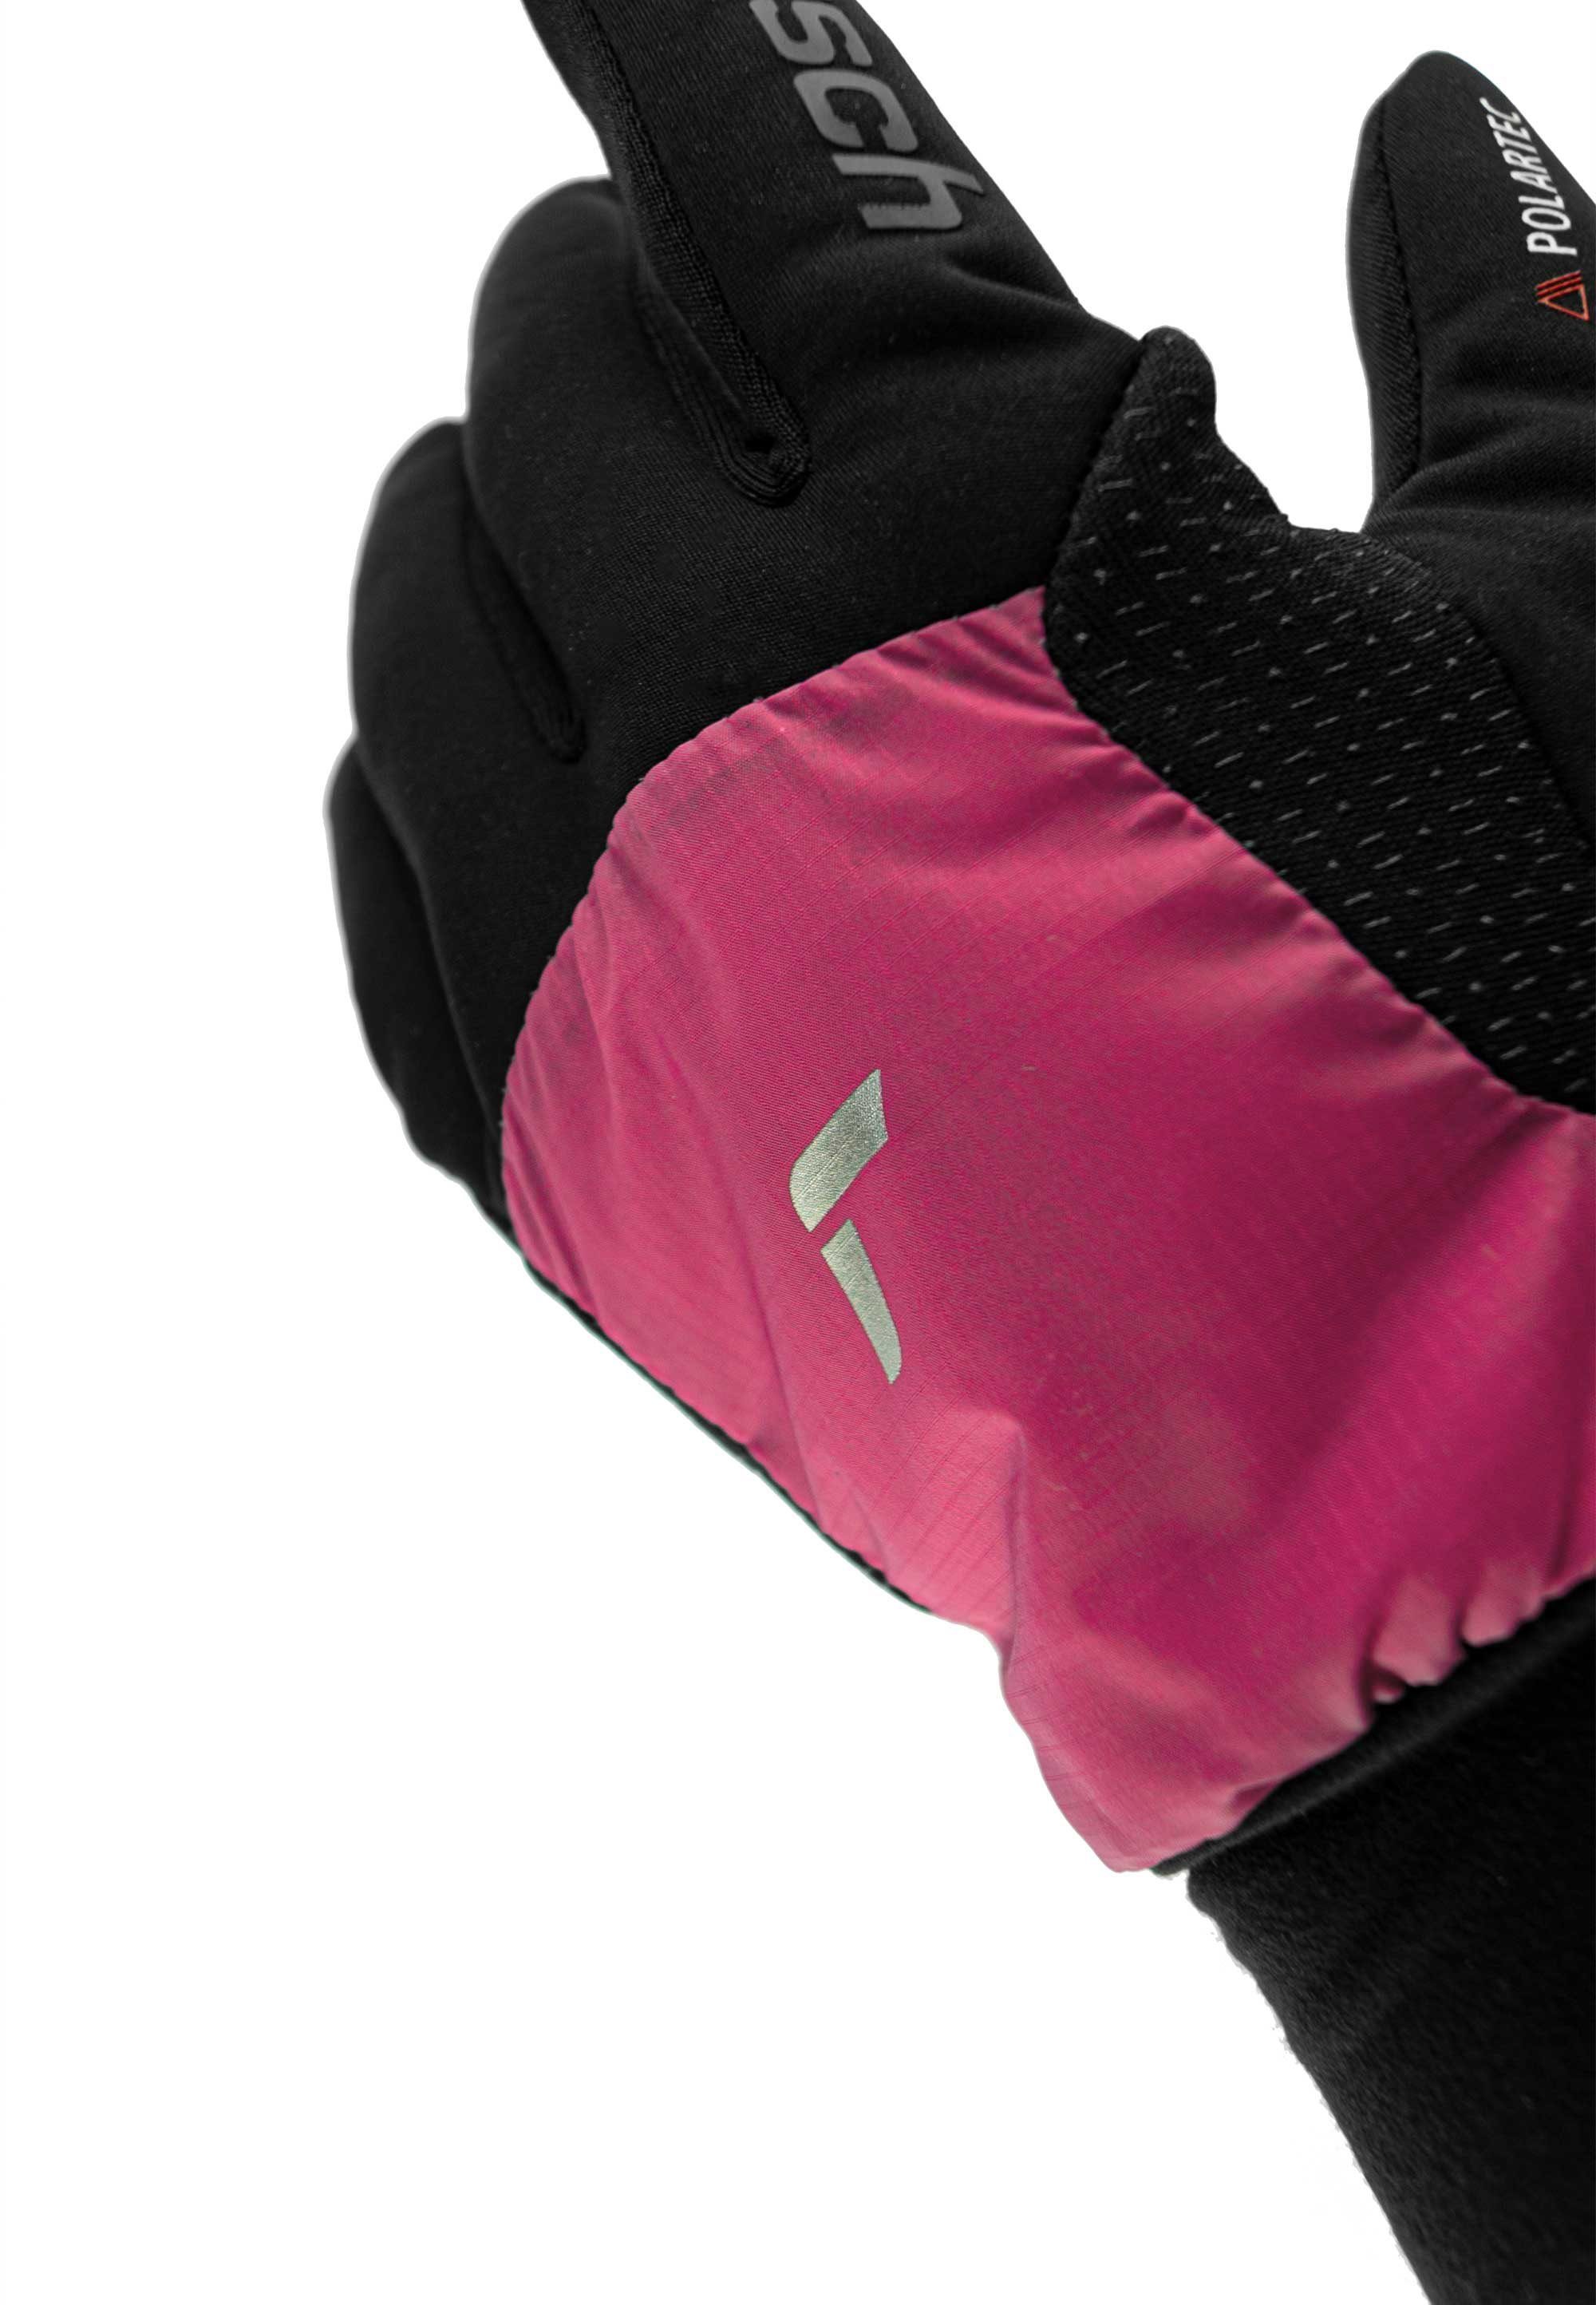 mit Garhwal schwarz-pink Reusch Skihandschuhe Hybrid Touchscreen-Funktion praktischer